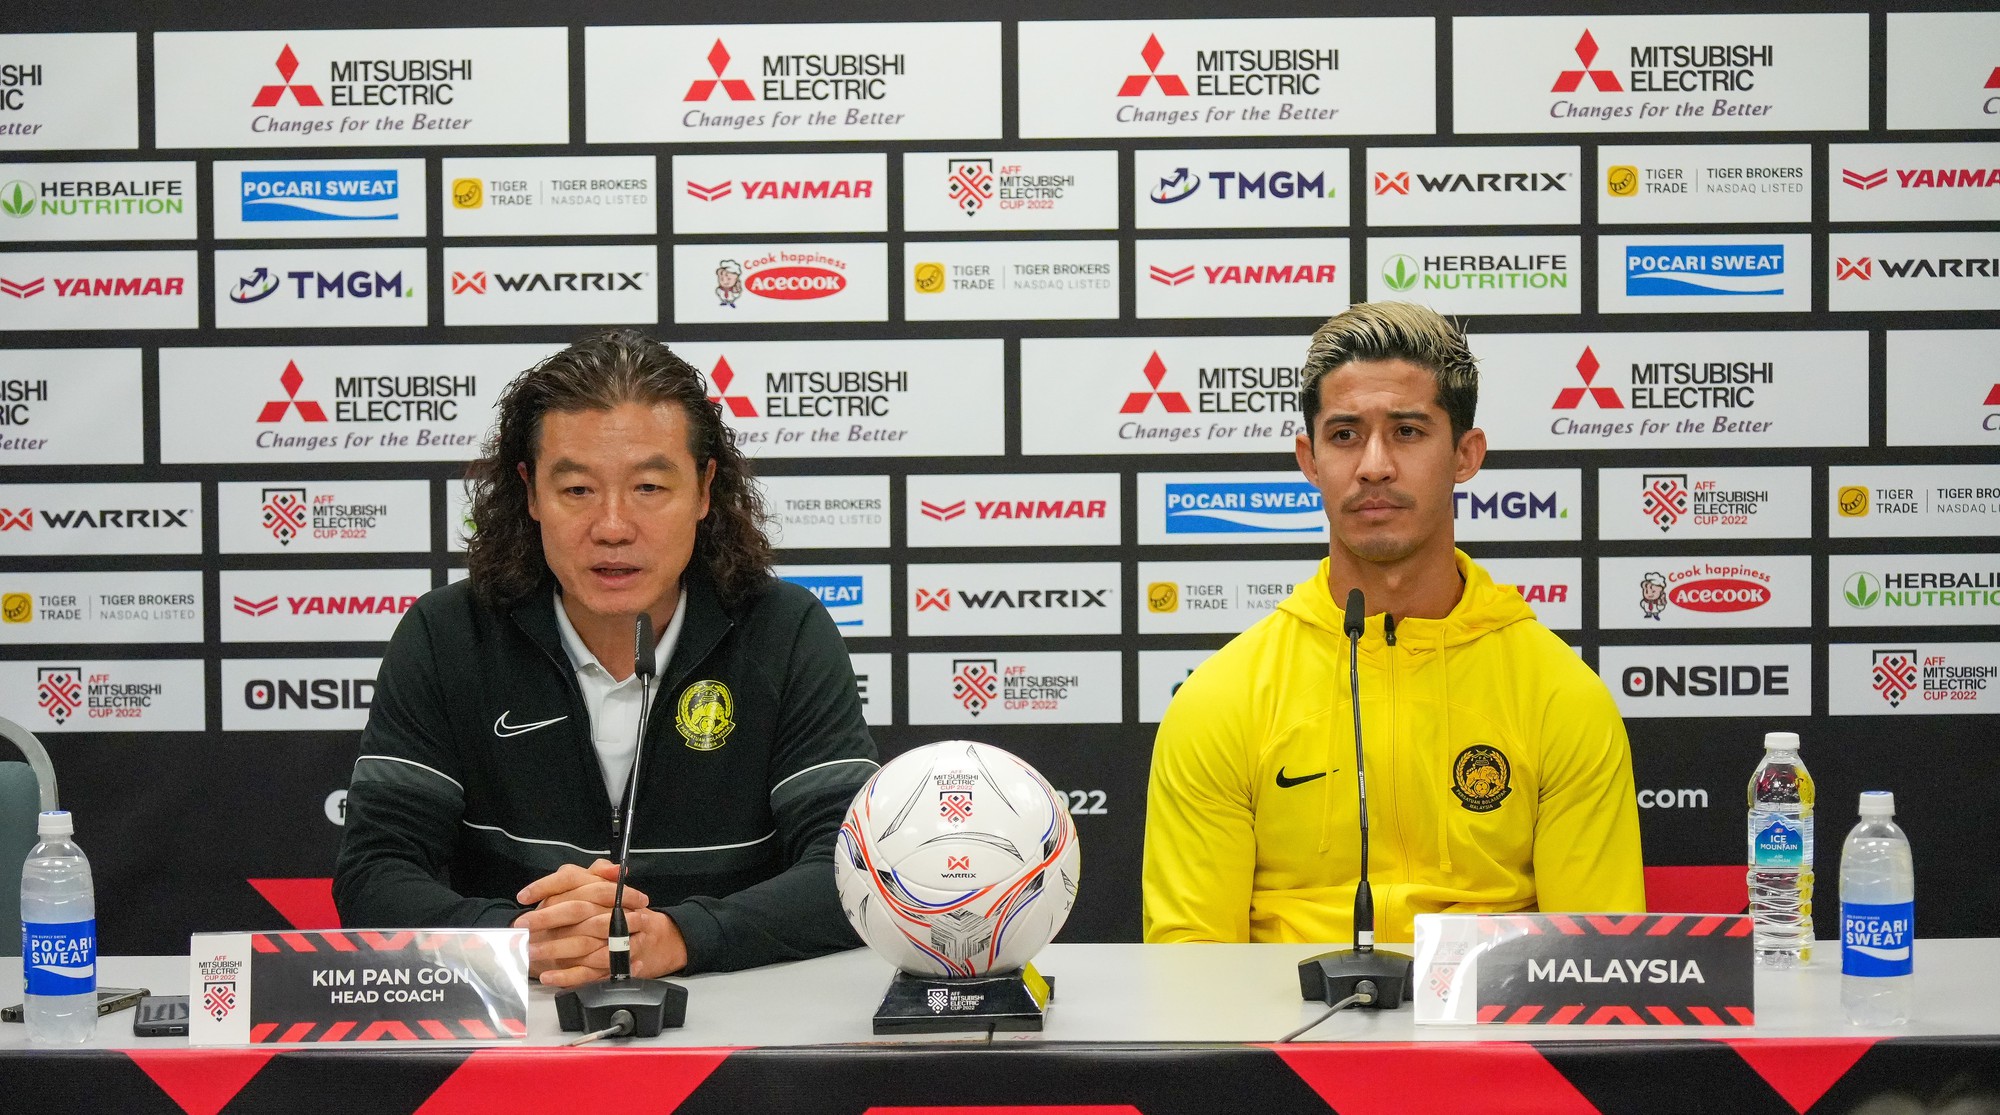 Tiền đạo Aguero góp công giúp Malaysia vượt mặt tuyển Việt Nam - Ảnh 1.